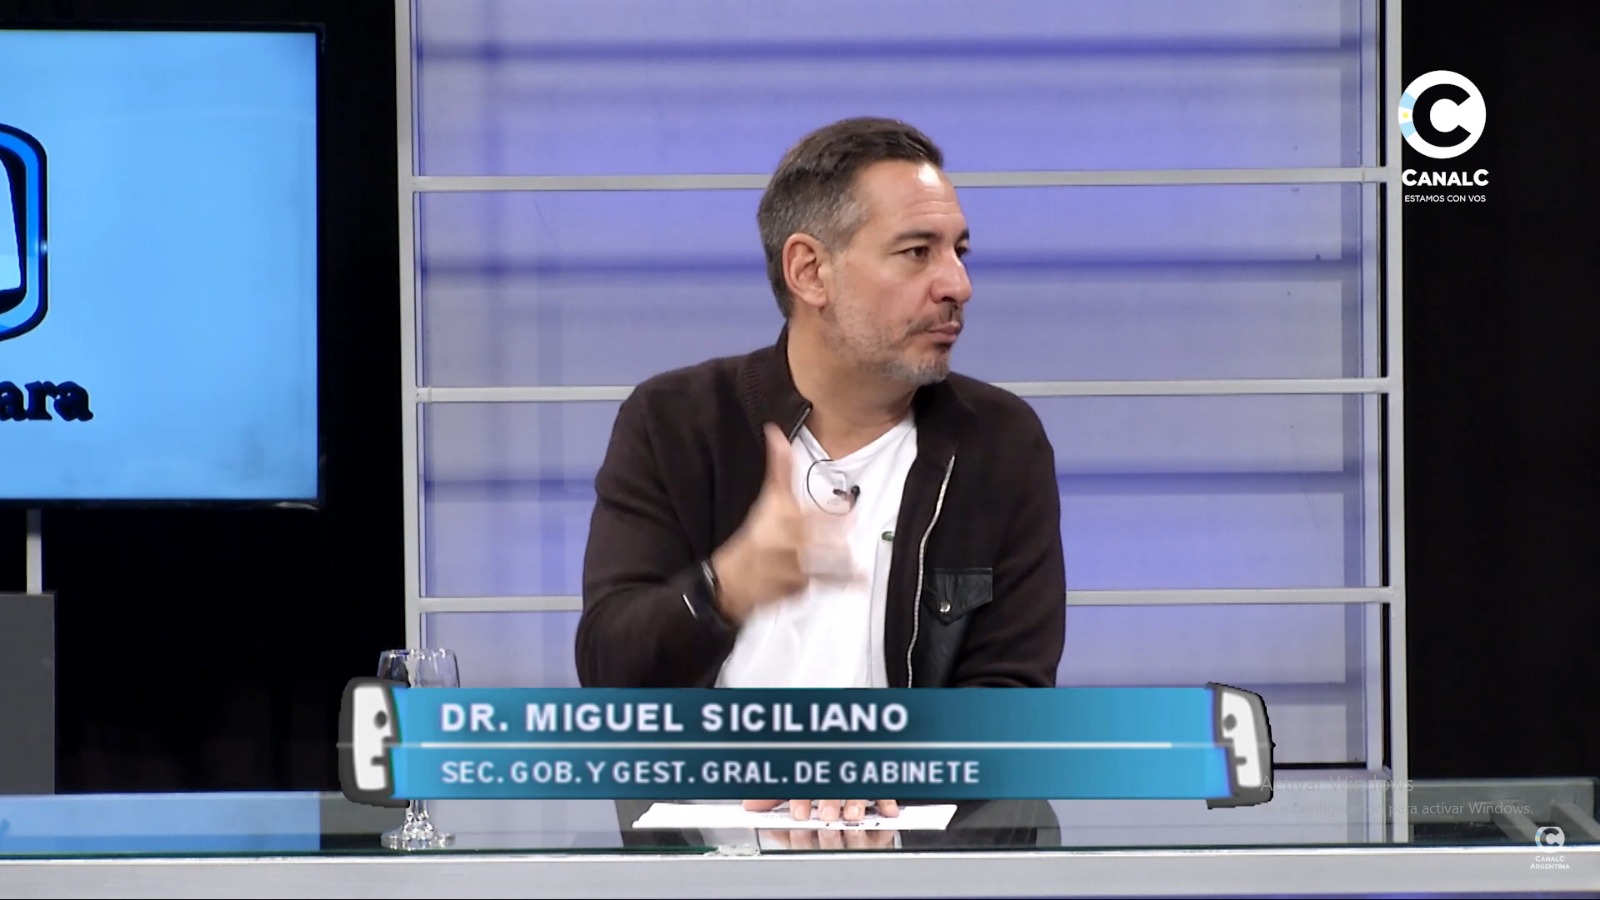 Miguel Siciliano en Cara a Cara "Yo quería ser intendente, me preparé para eso" • Canal C